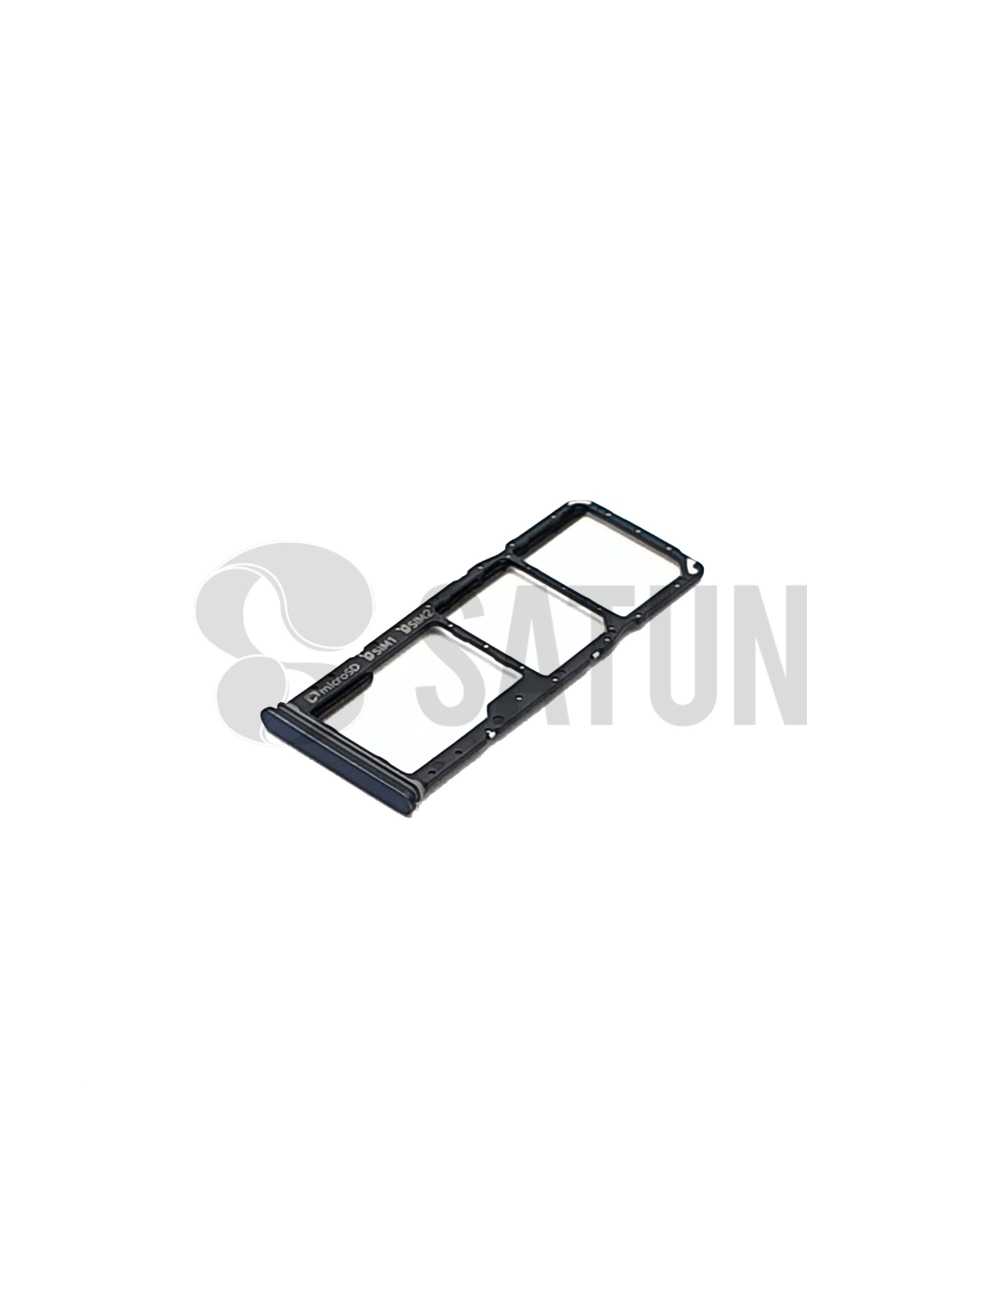 Bandeja Dual Sim y microSD Samsung Galaxy A9 2018 negro. GH98-43612A